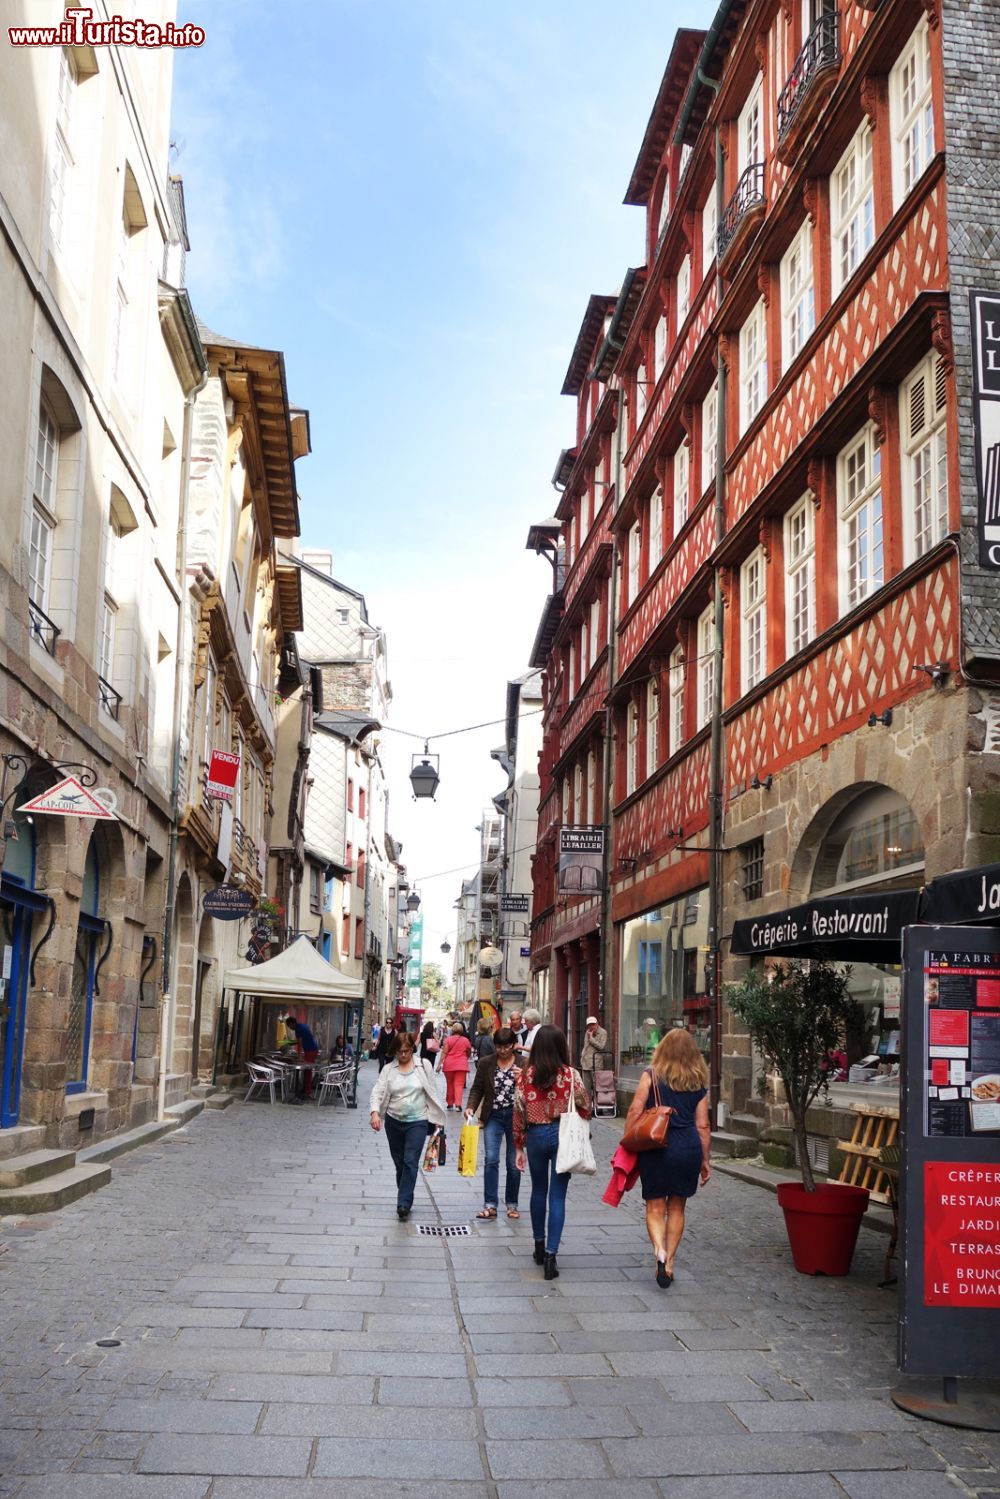 Immagine A passeggio in un vicolo del centro storico di Rennes, Francia.